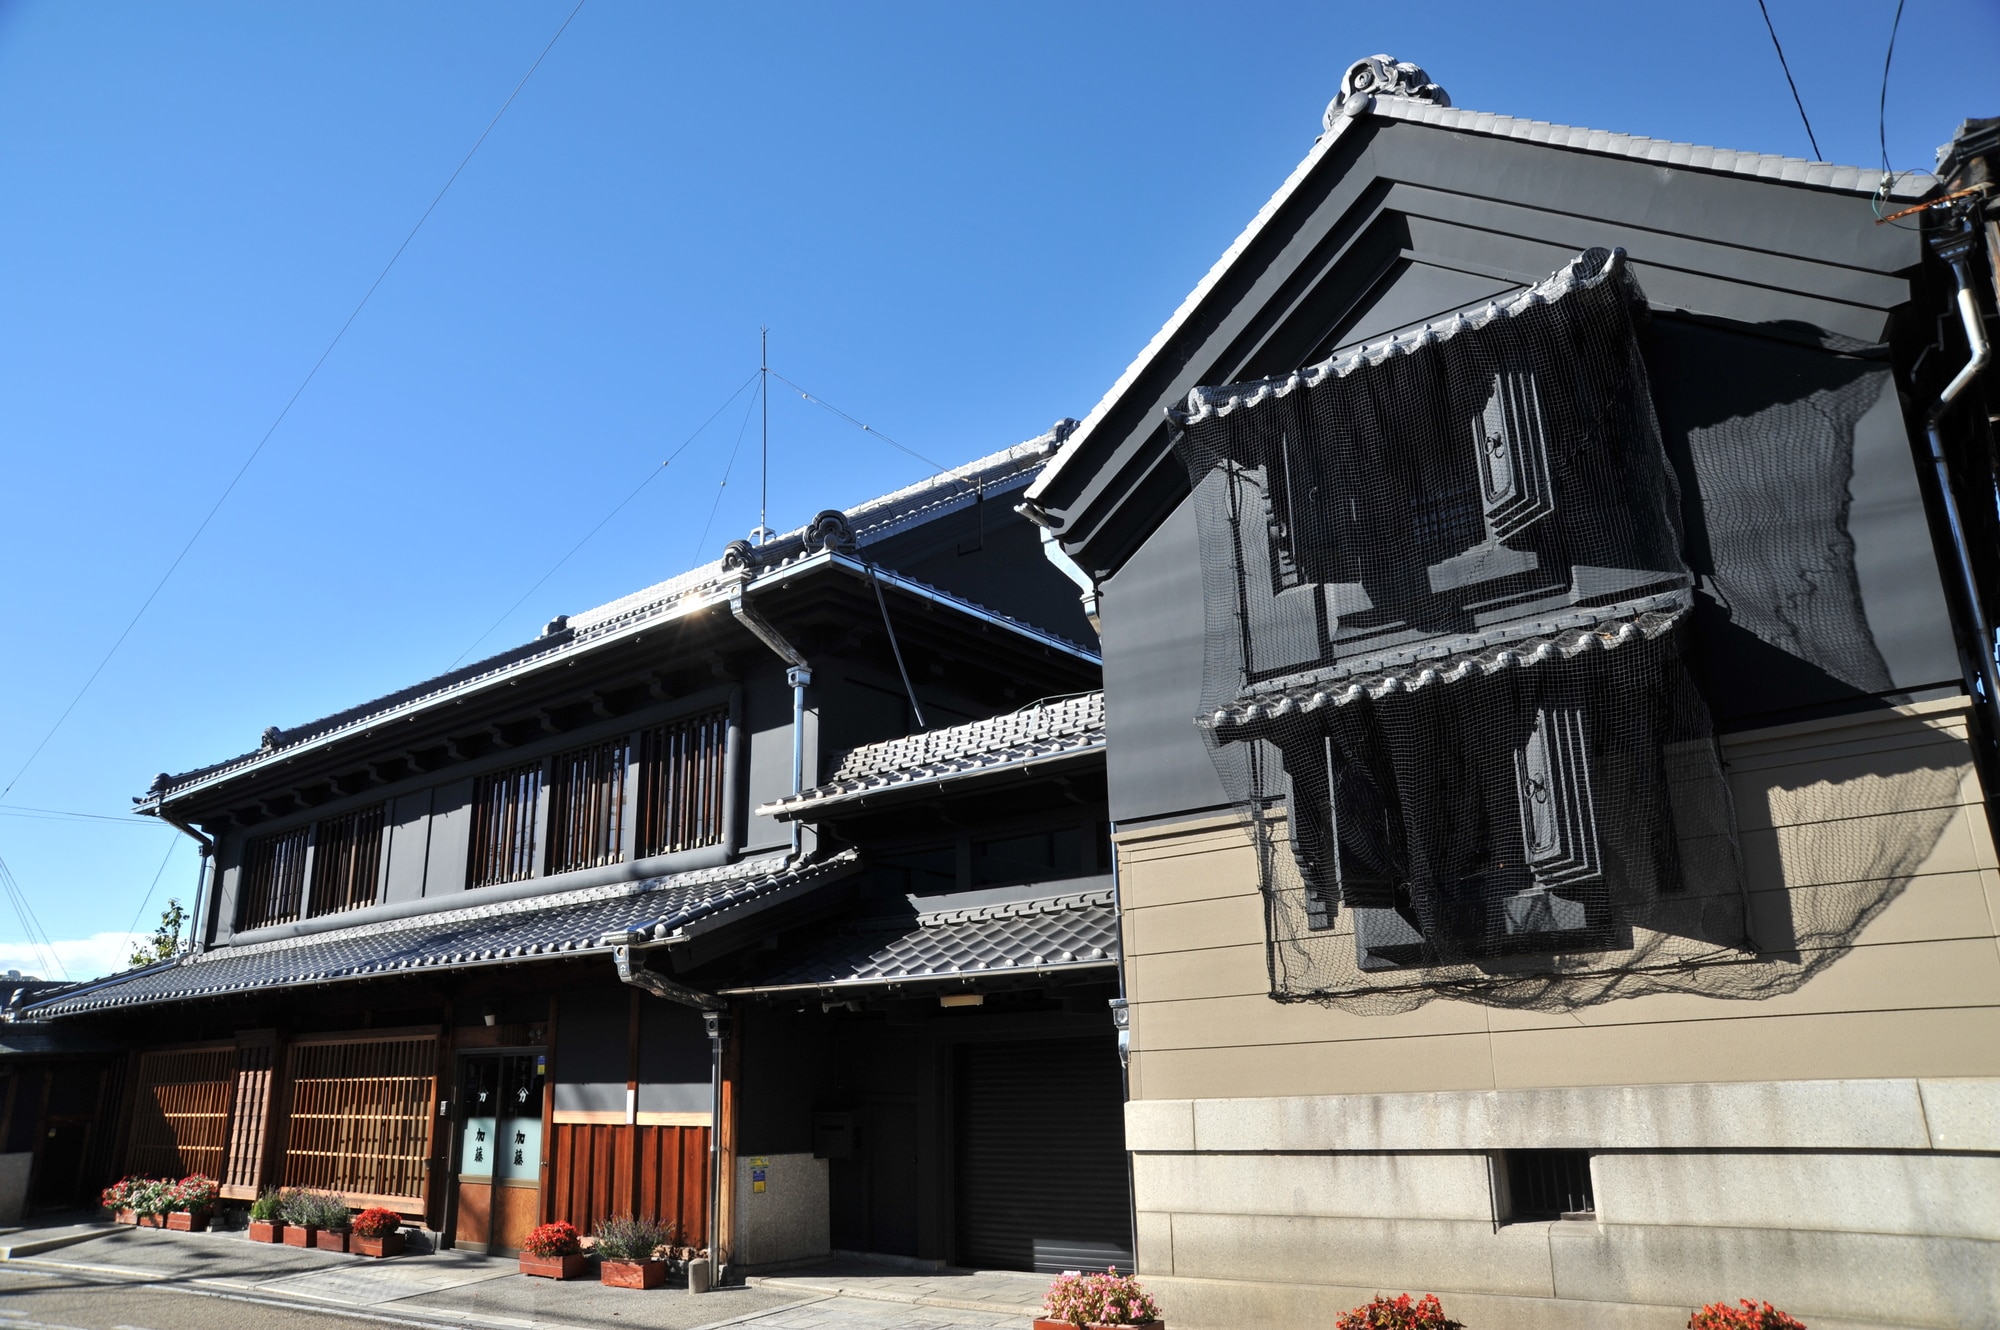 多治見市の観光6選 日本一暑い町で古代から続く焼き物文化に触れる旅 Skyticket 観光ガイド